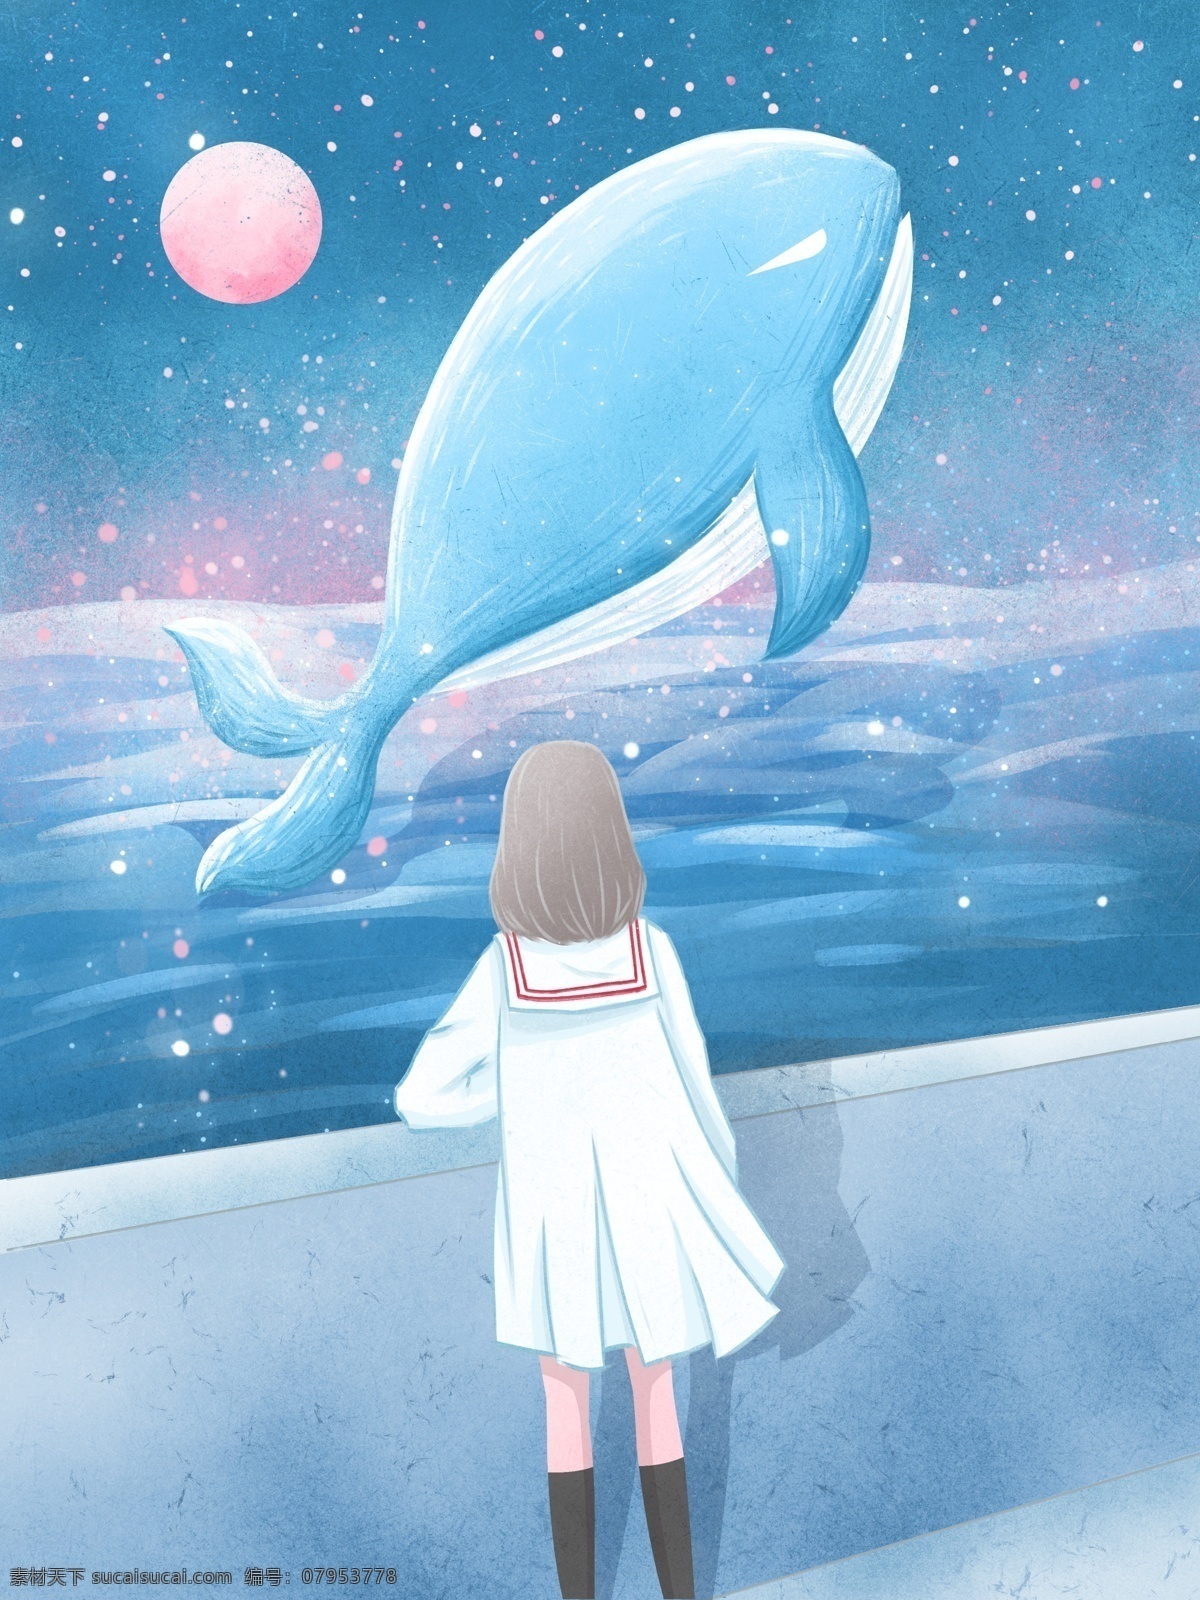 治愈 系 插画 海蓝 时见 鲸 海边 看 女孩 蓝色 清新 星空 壁纸 海 月 背景